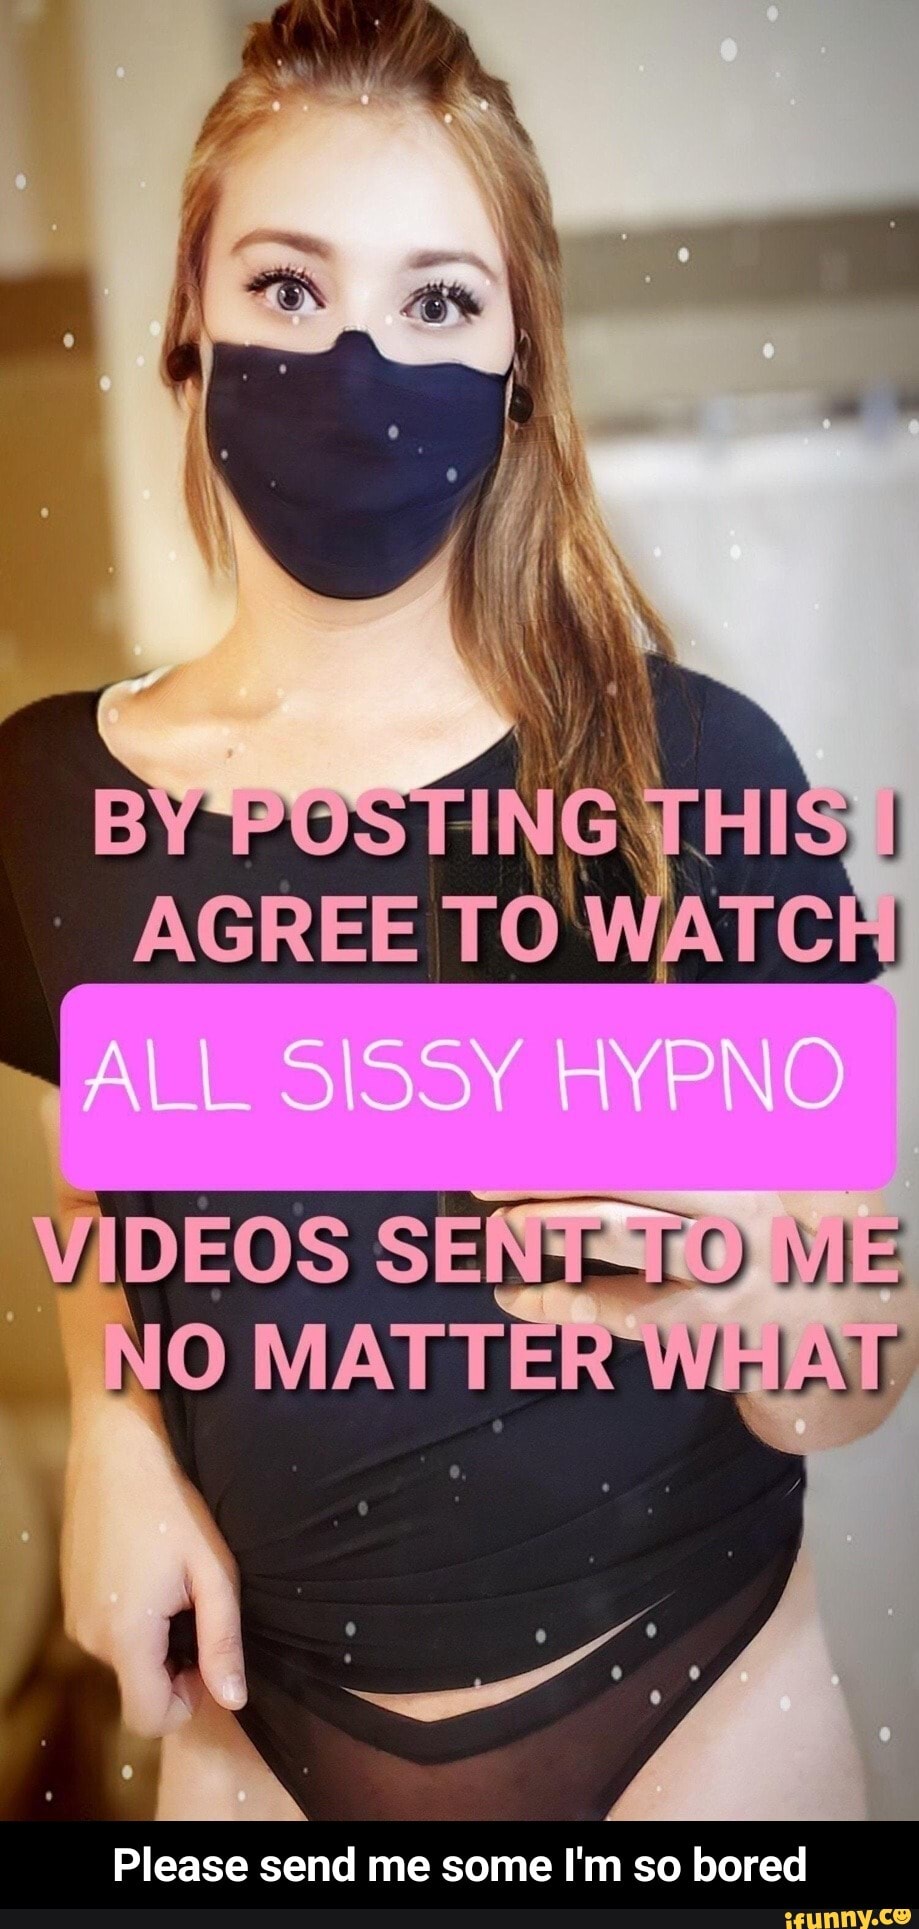 Sissy Videos Com